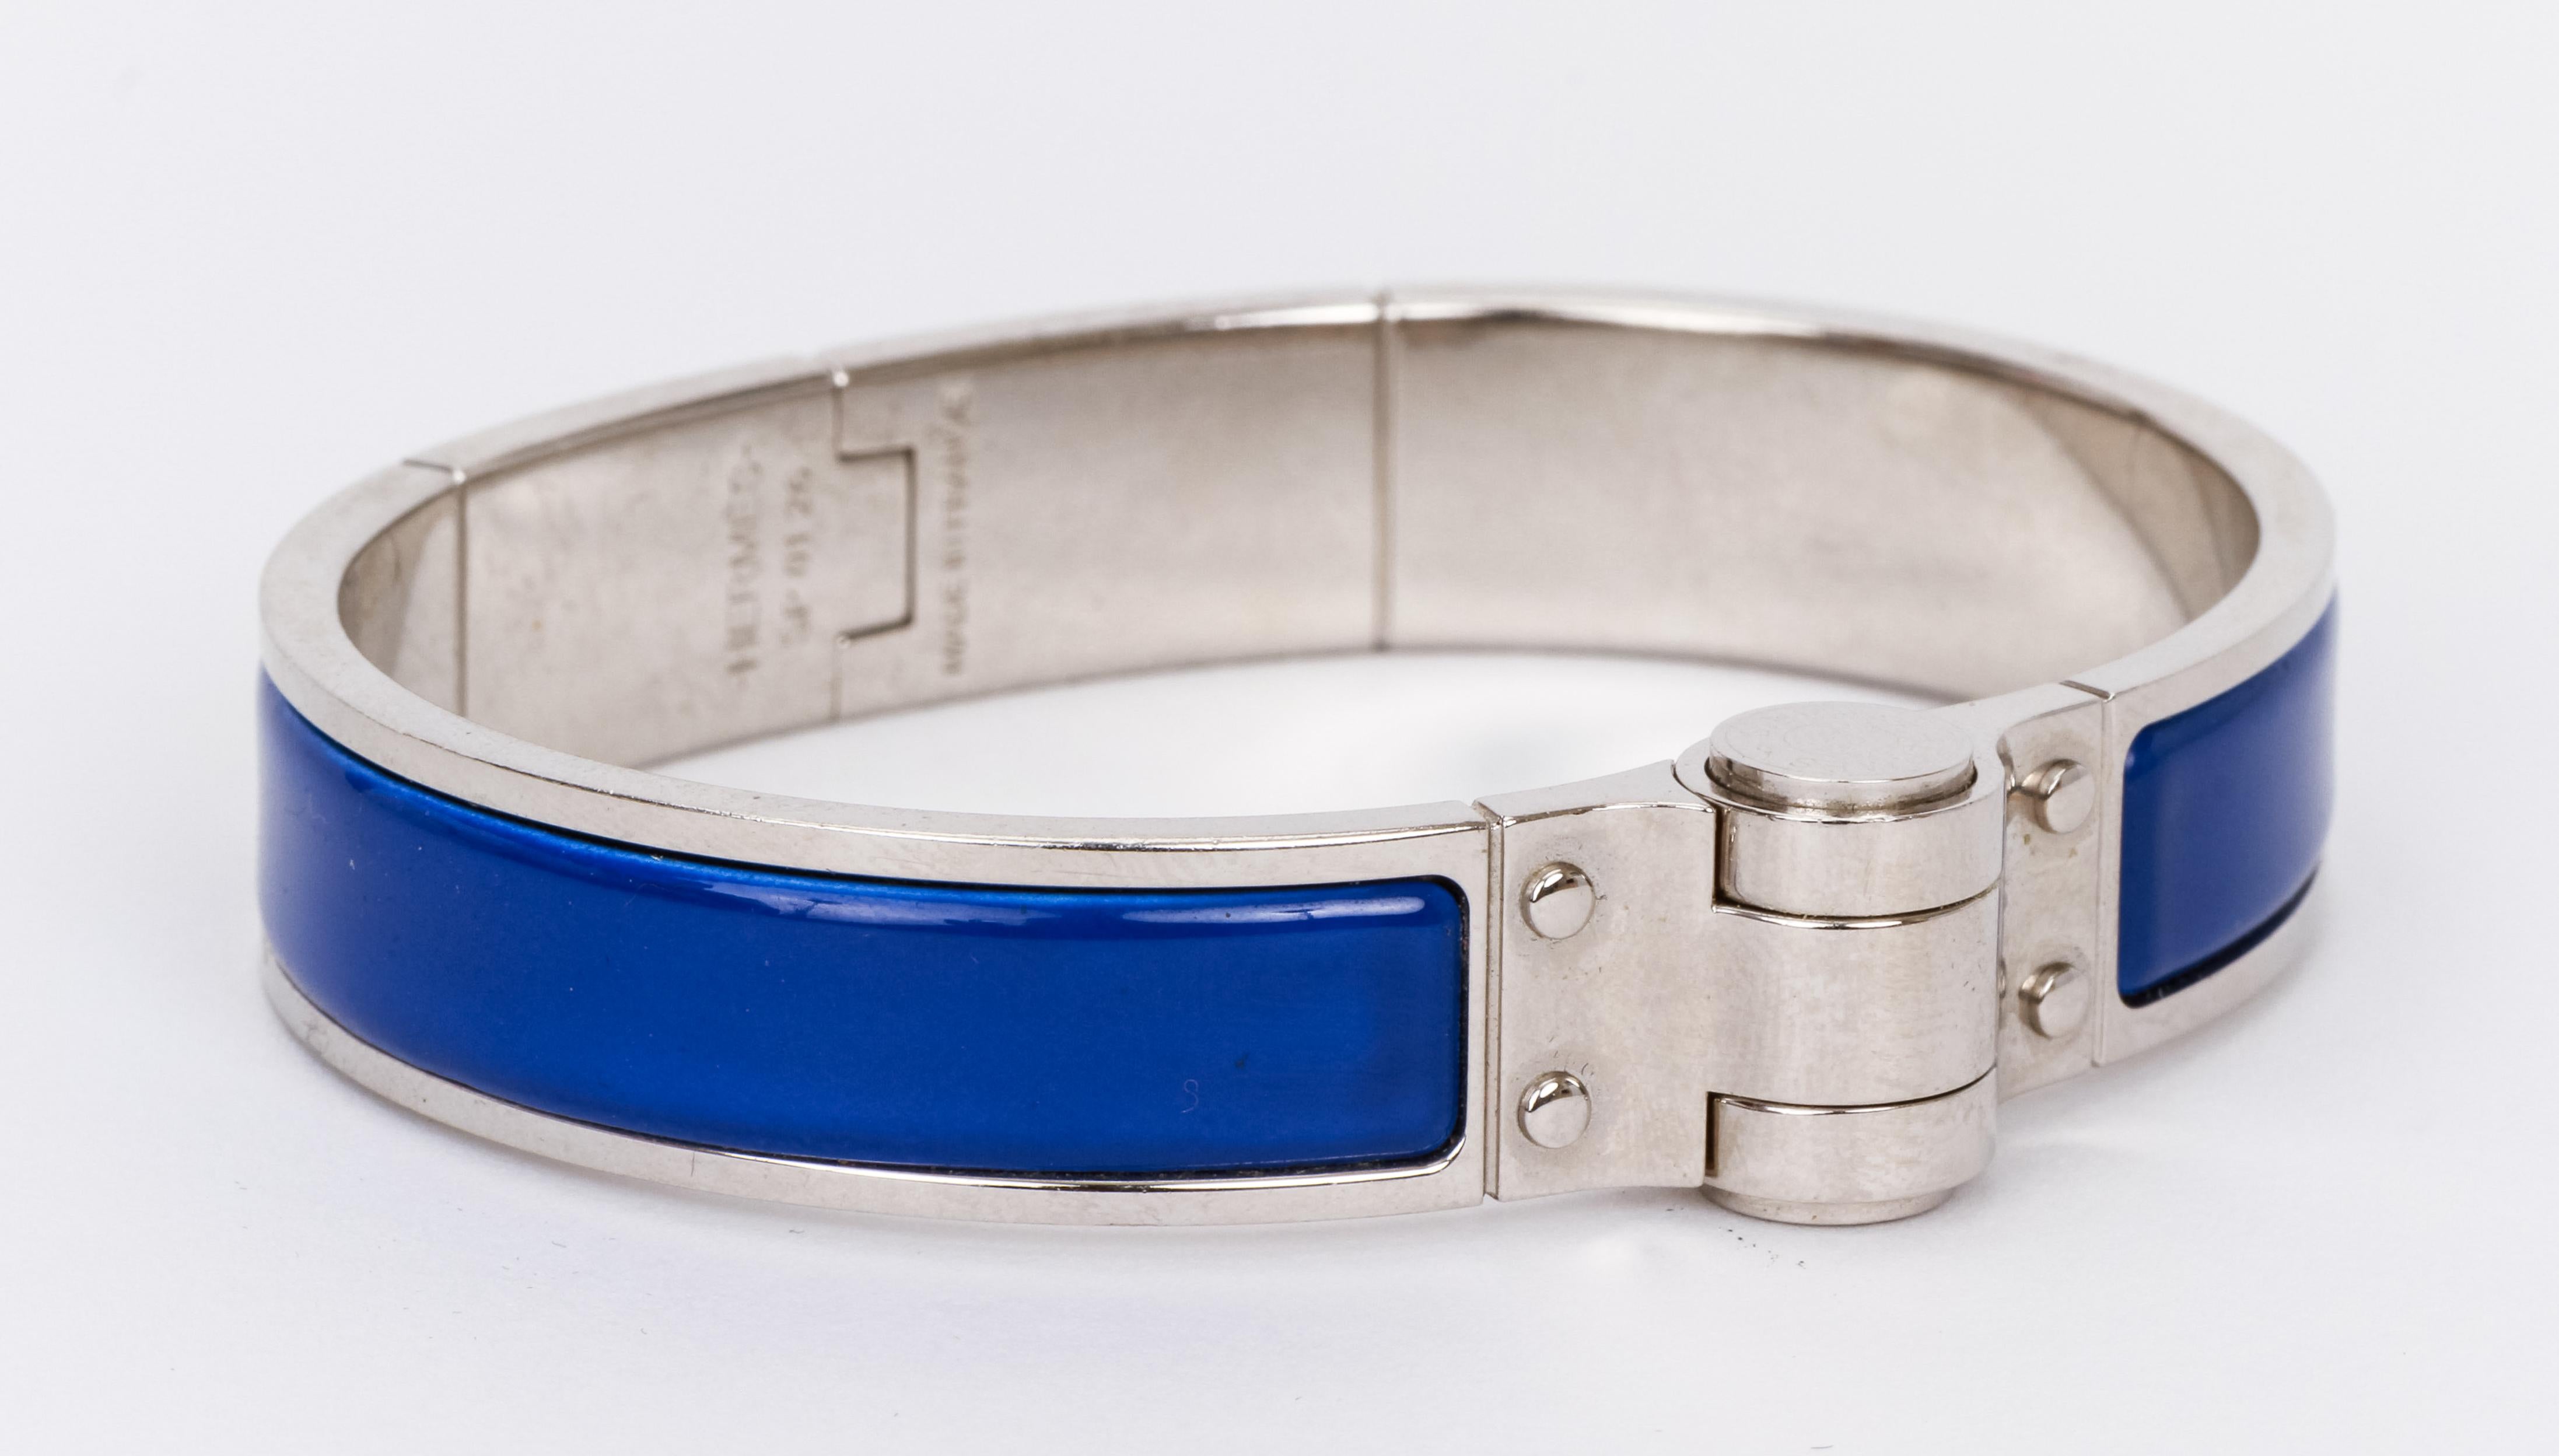 Hermes Blue Enamel Hinge Silver Bangle Bracelet
Comes with velvet pouch. 